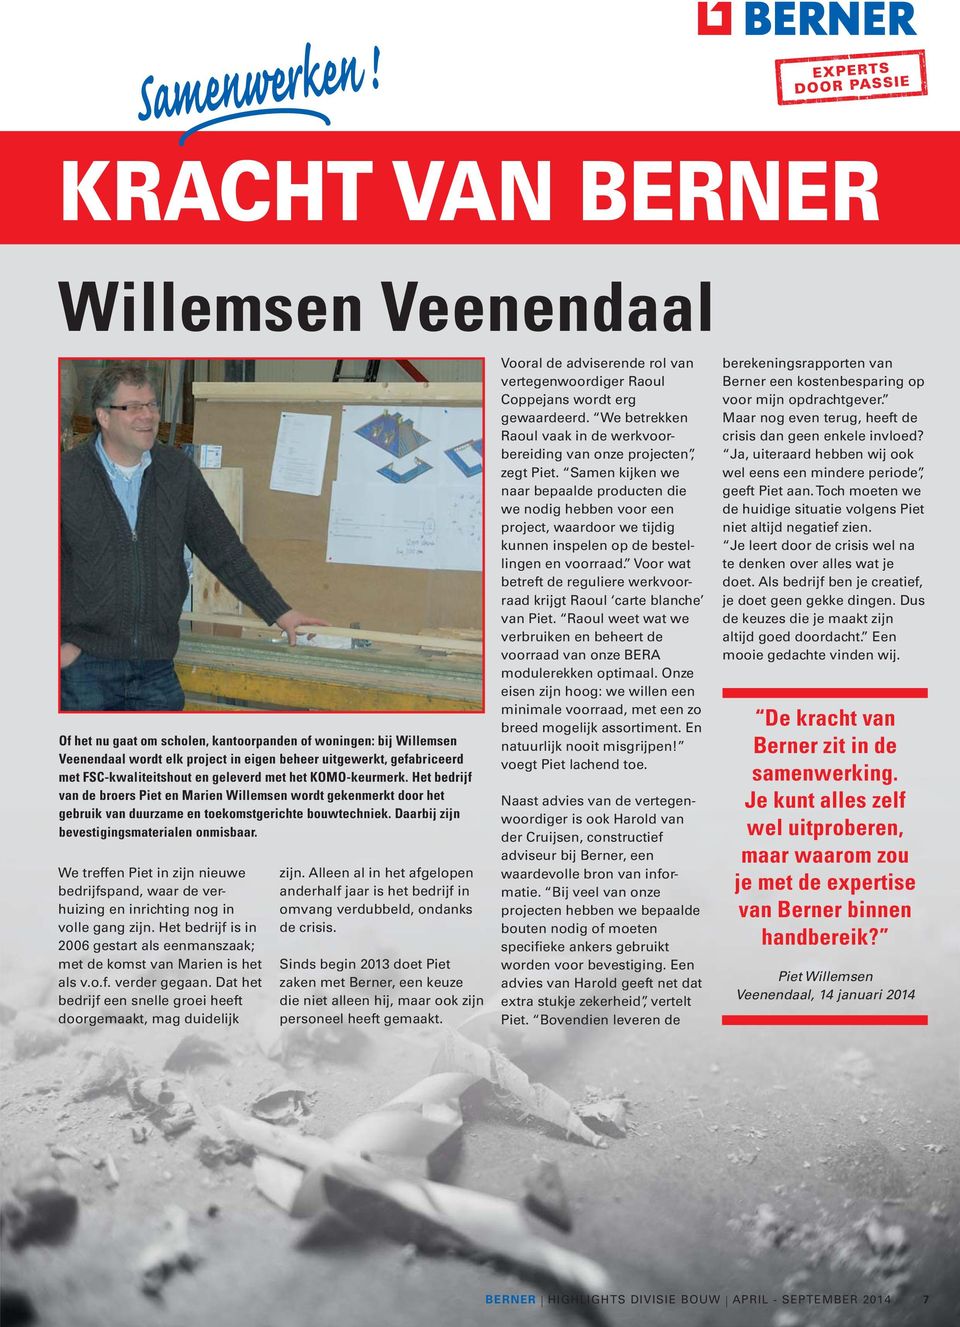 en geleverd met het KOMO-keurmerk. Het bedrijf van de broers Piet en Marien Willemsen wordt gekenmerkt door het gebruik van duurzame en toekomstgerichte bouwtechniek.